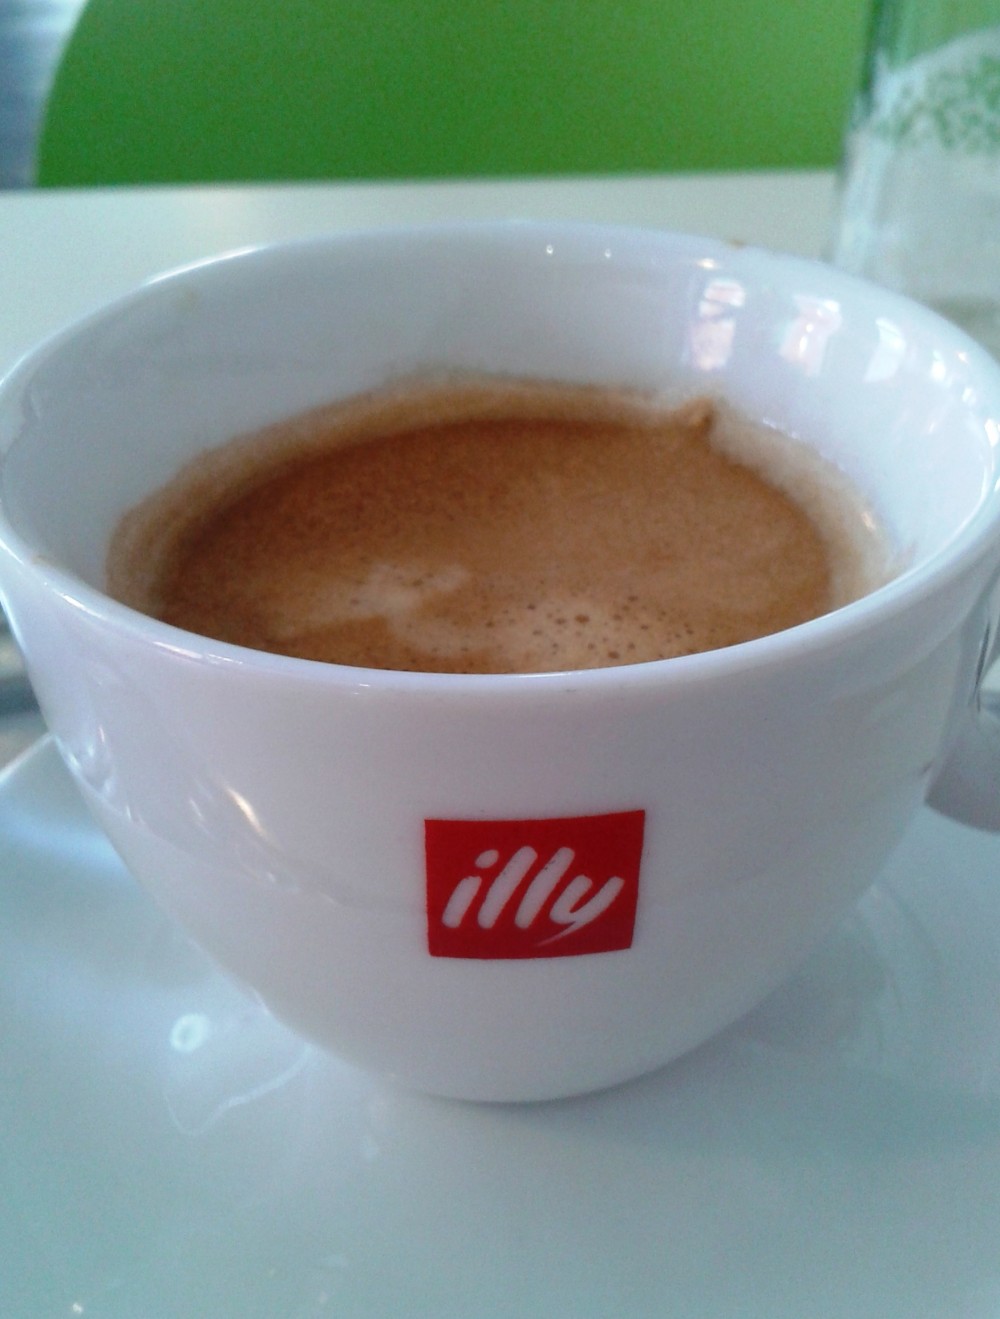 Le Pho - Doppelter Espresso (EUR 3,60) - le Pho - Wien